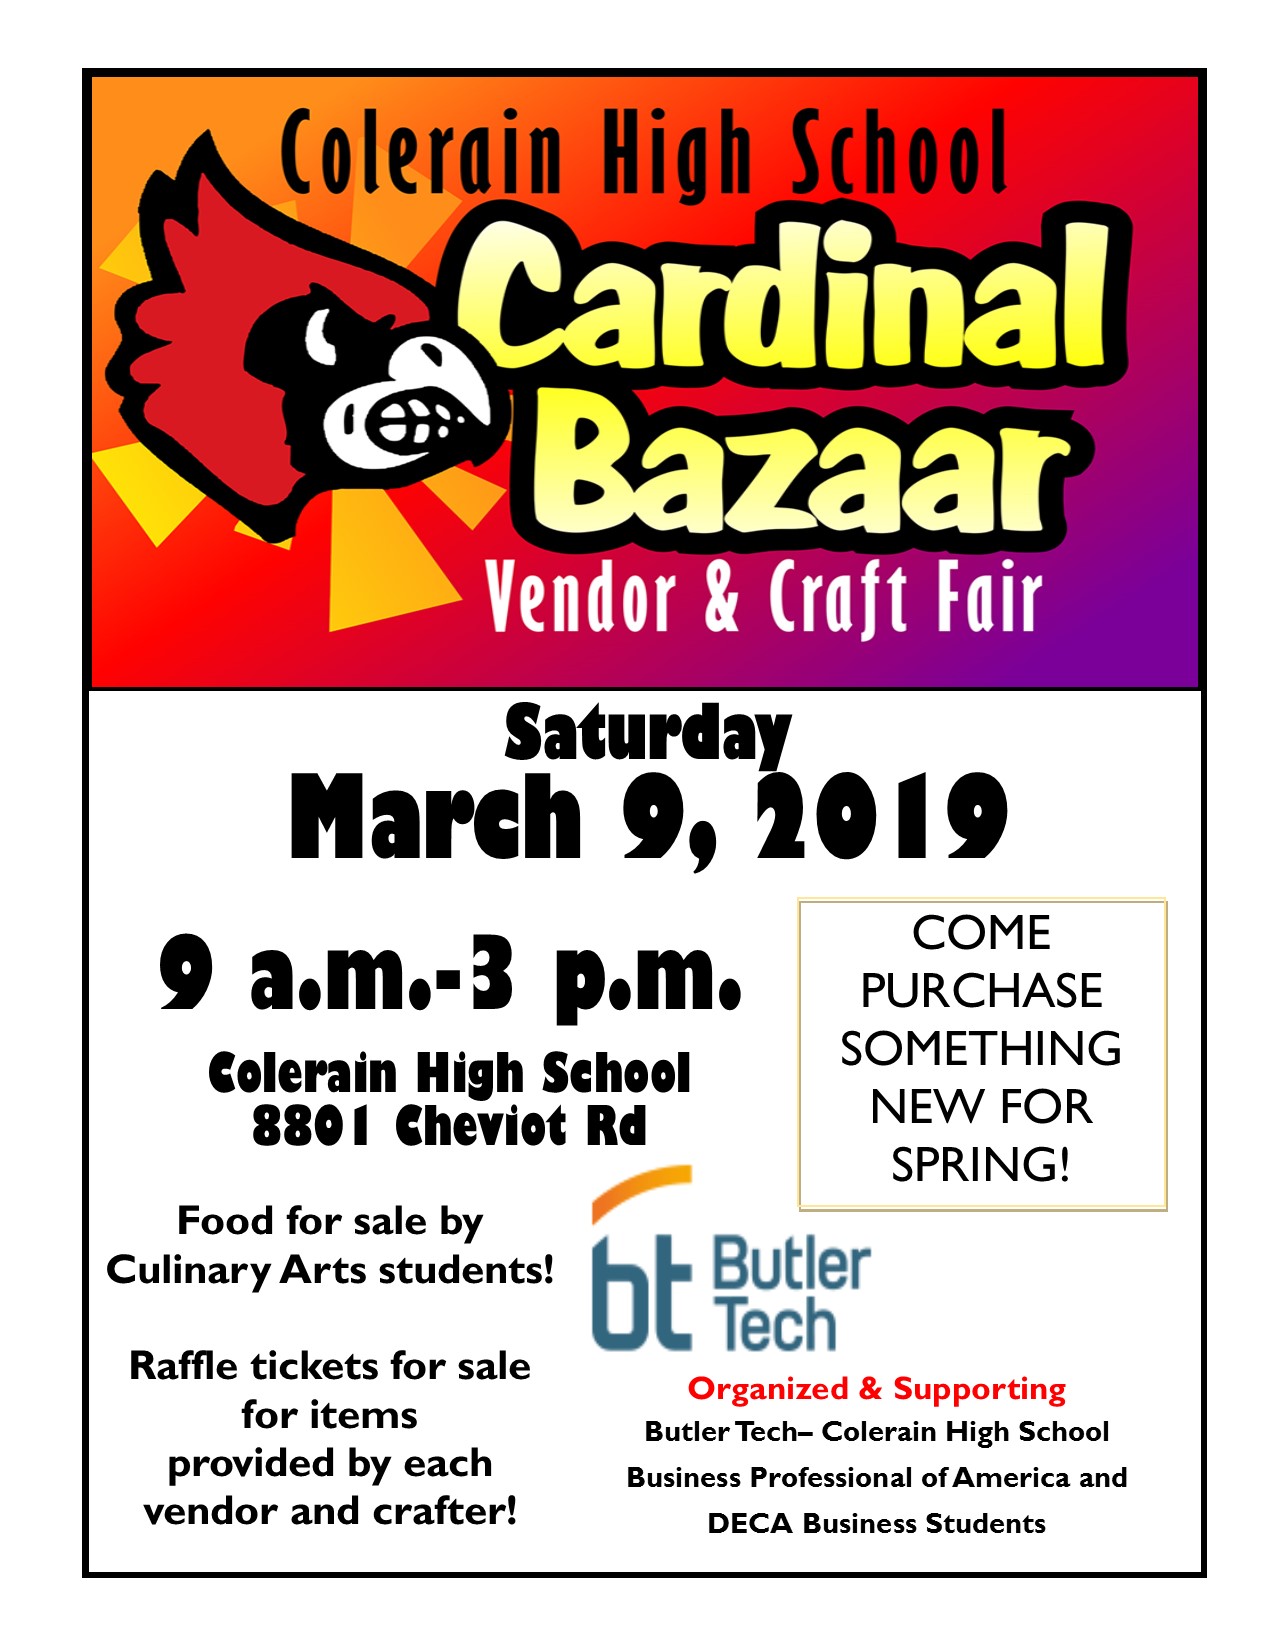 Cardinal Bazaar Vendor & Craft Fair - Cincinnati Event